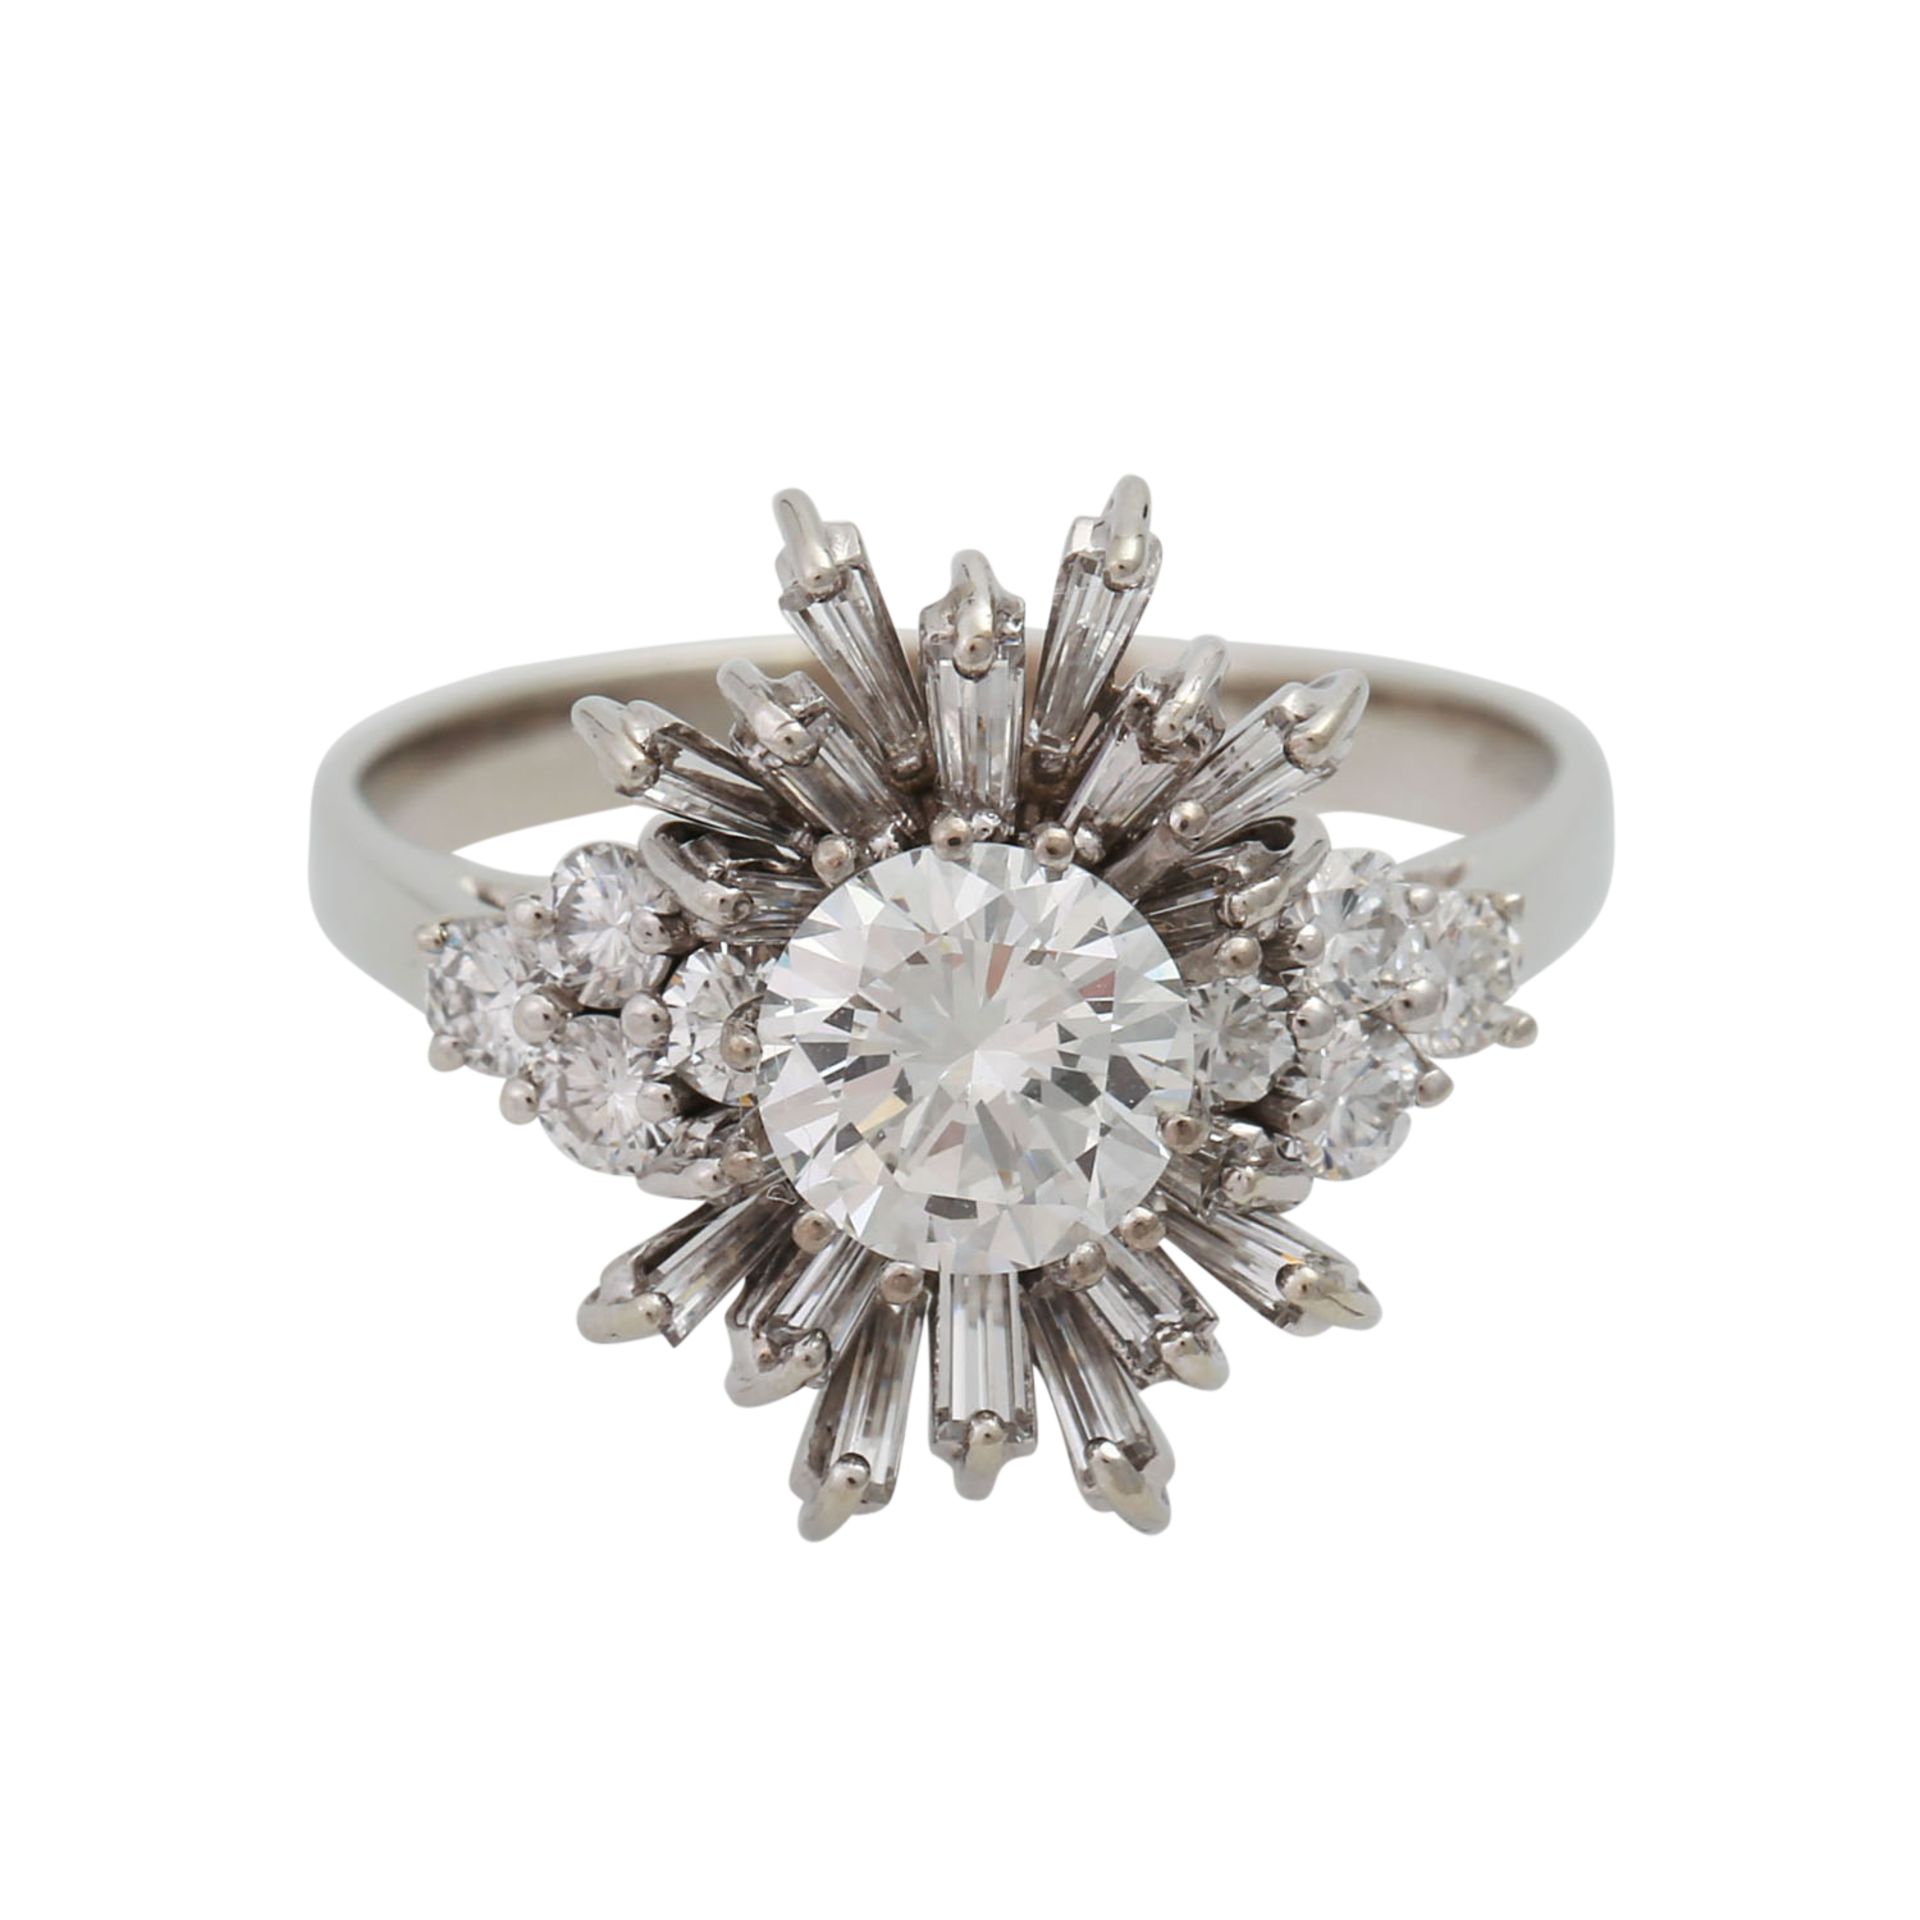 Ring mit Diamantbesatz zus. ca. 1,6 ctdavon zentral 1 Brill. ca. 0,98 ct WEIß (H)/VVS, 8 kl.